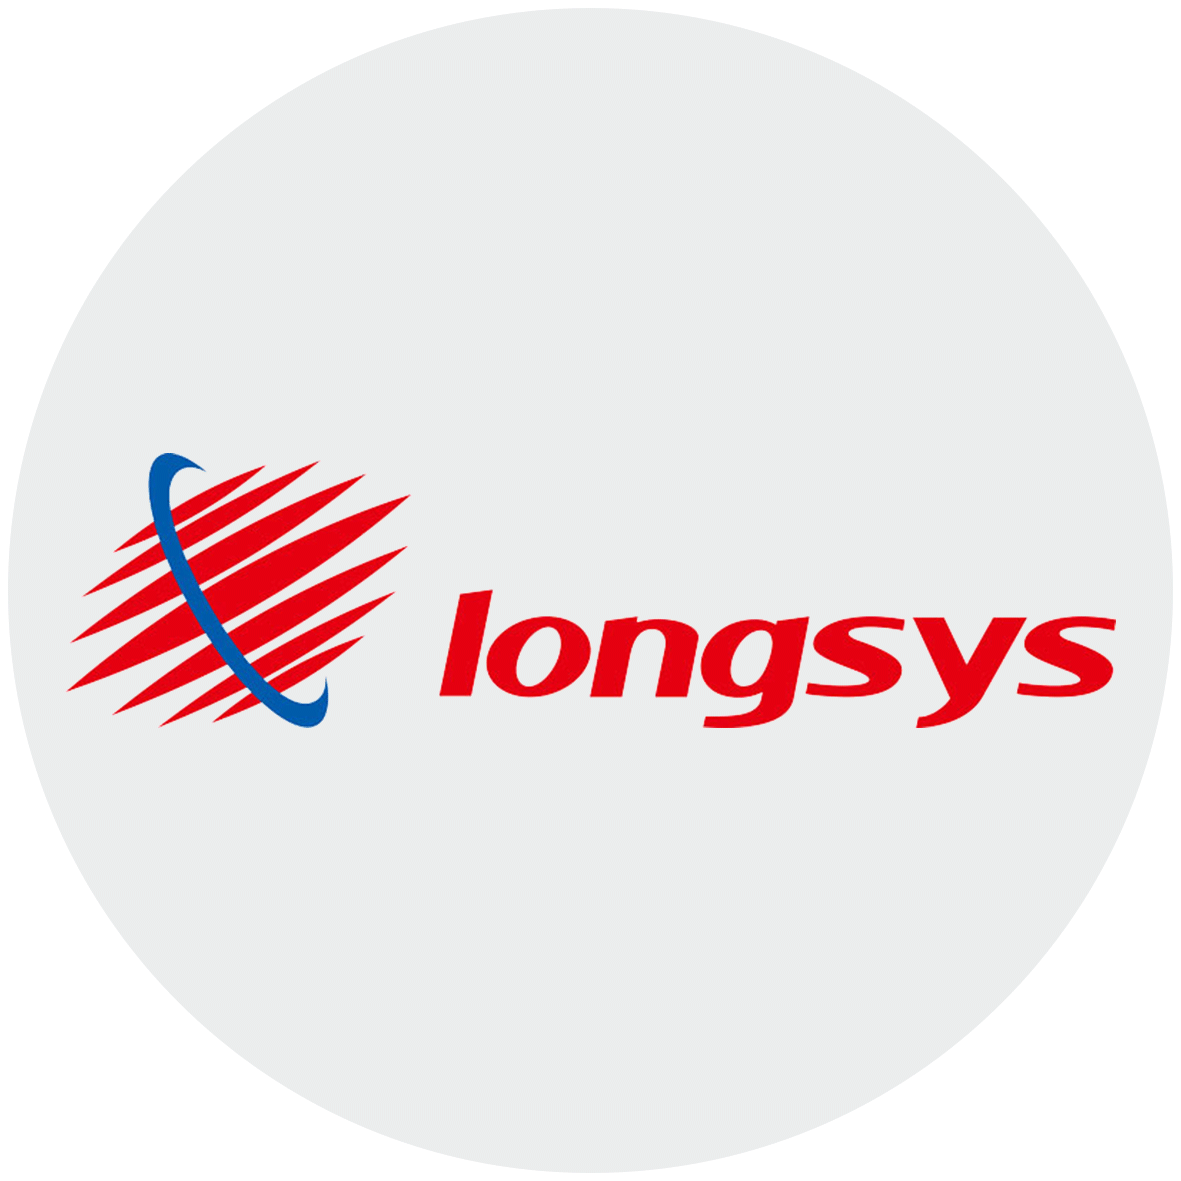 Longsys